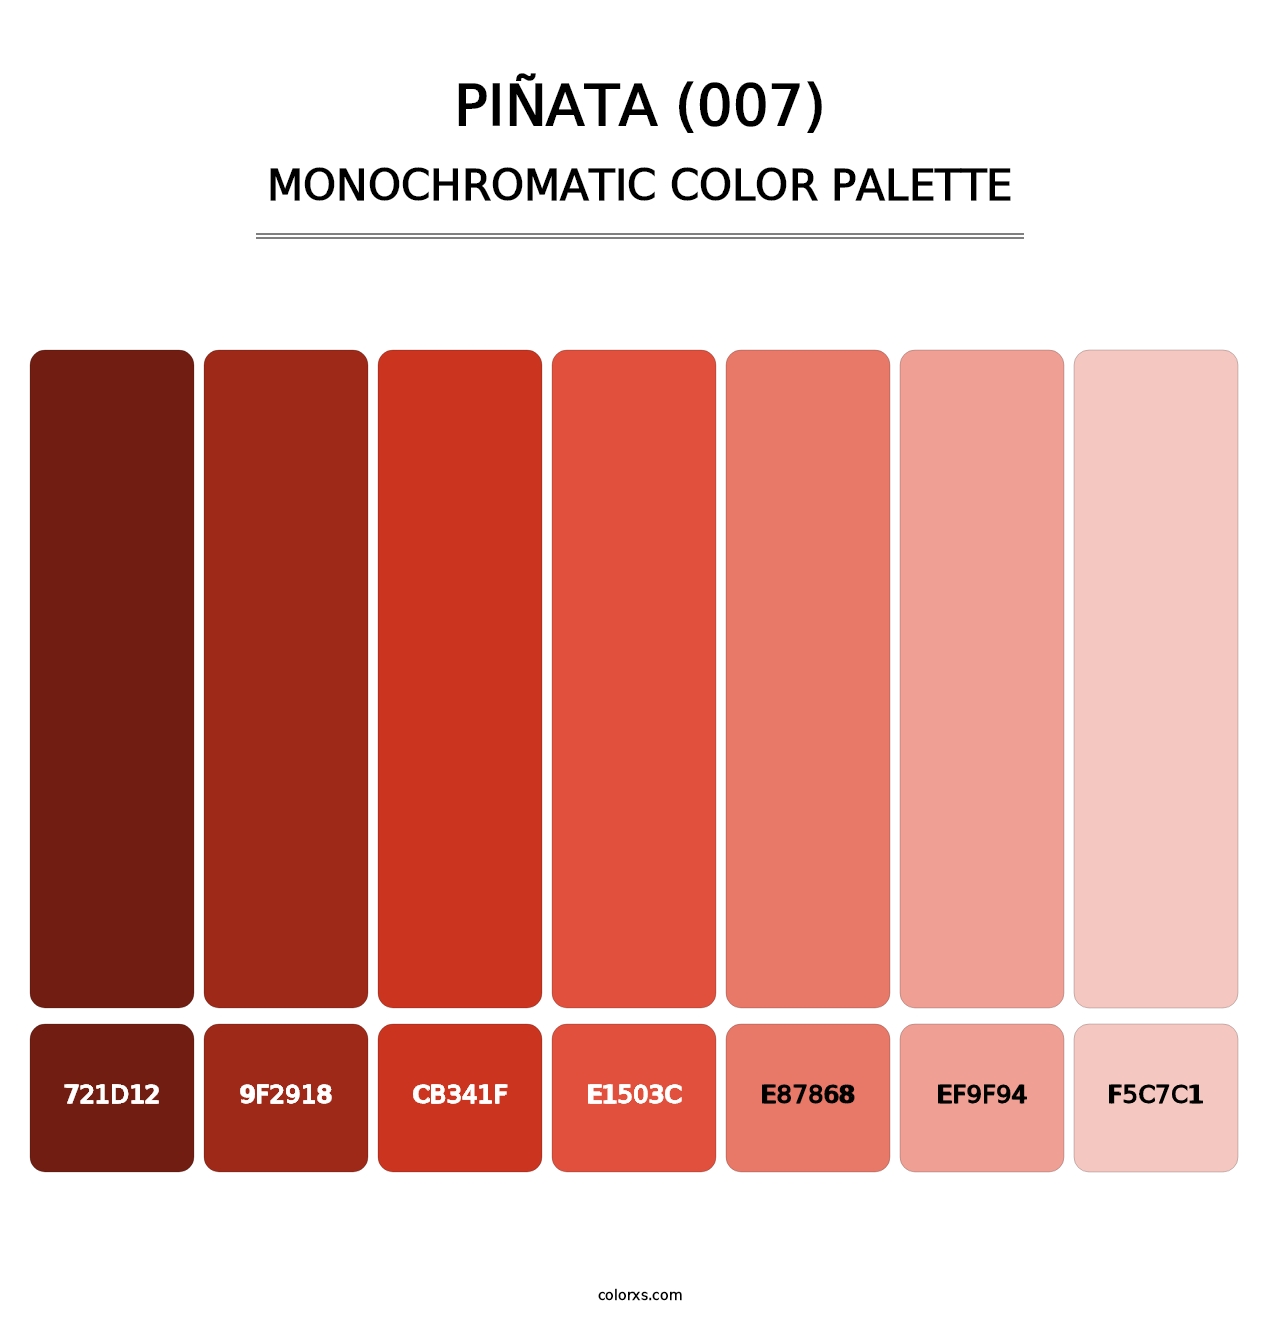 Piñata (007) - Monochromatic Color Palette